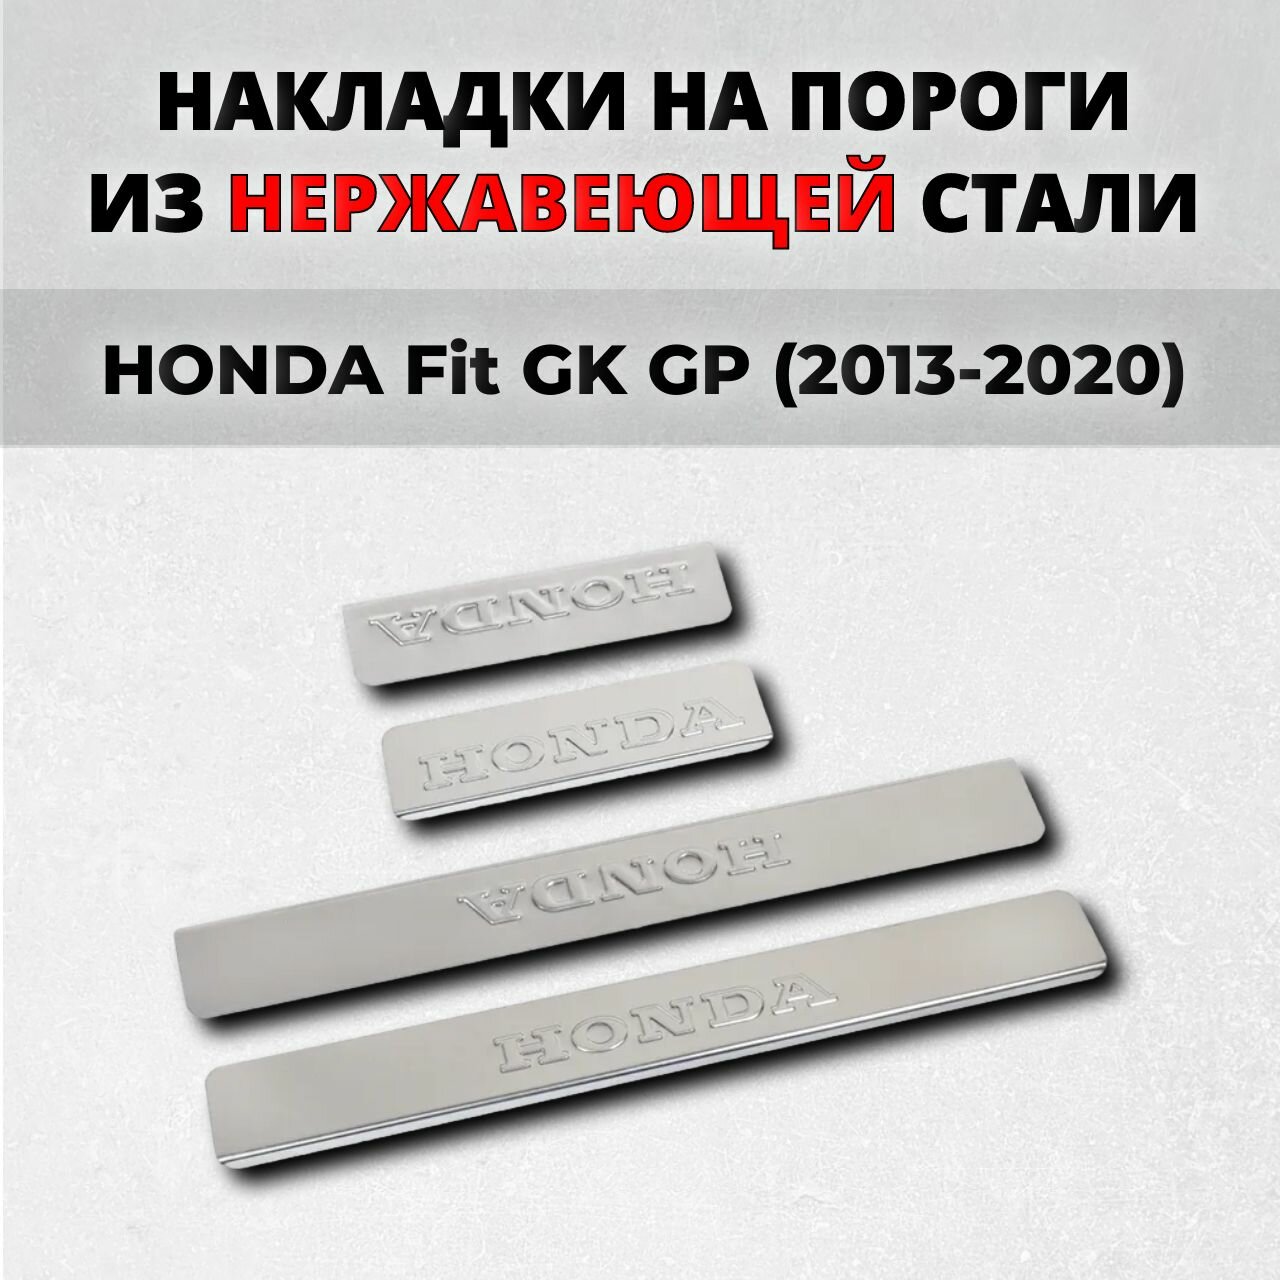 Накладки на пороги Хонда Фит 3 ГК ГП 2013-2020 из нержавеющей стали HONDA Fit GK GP